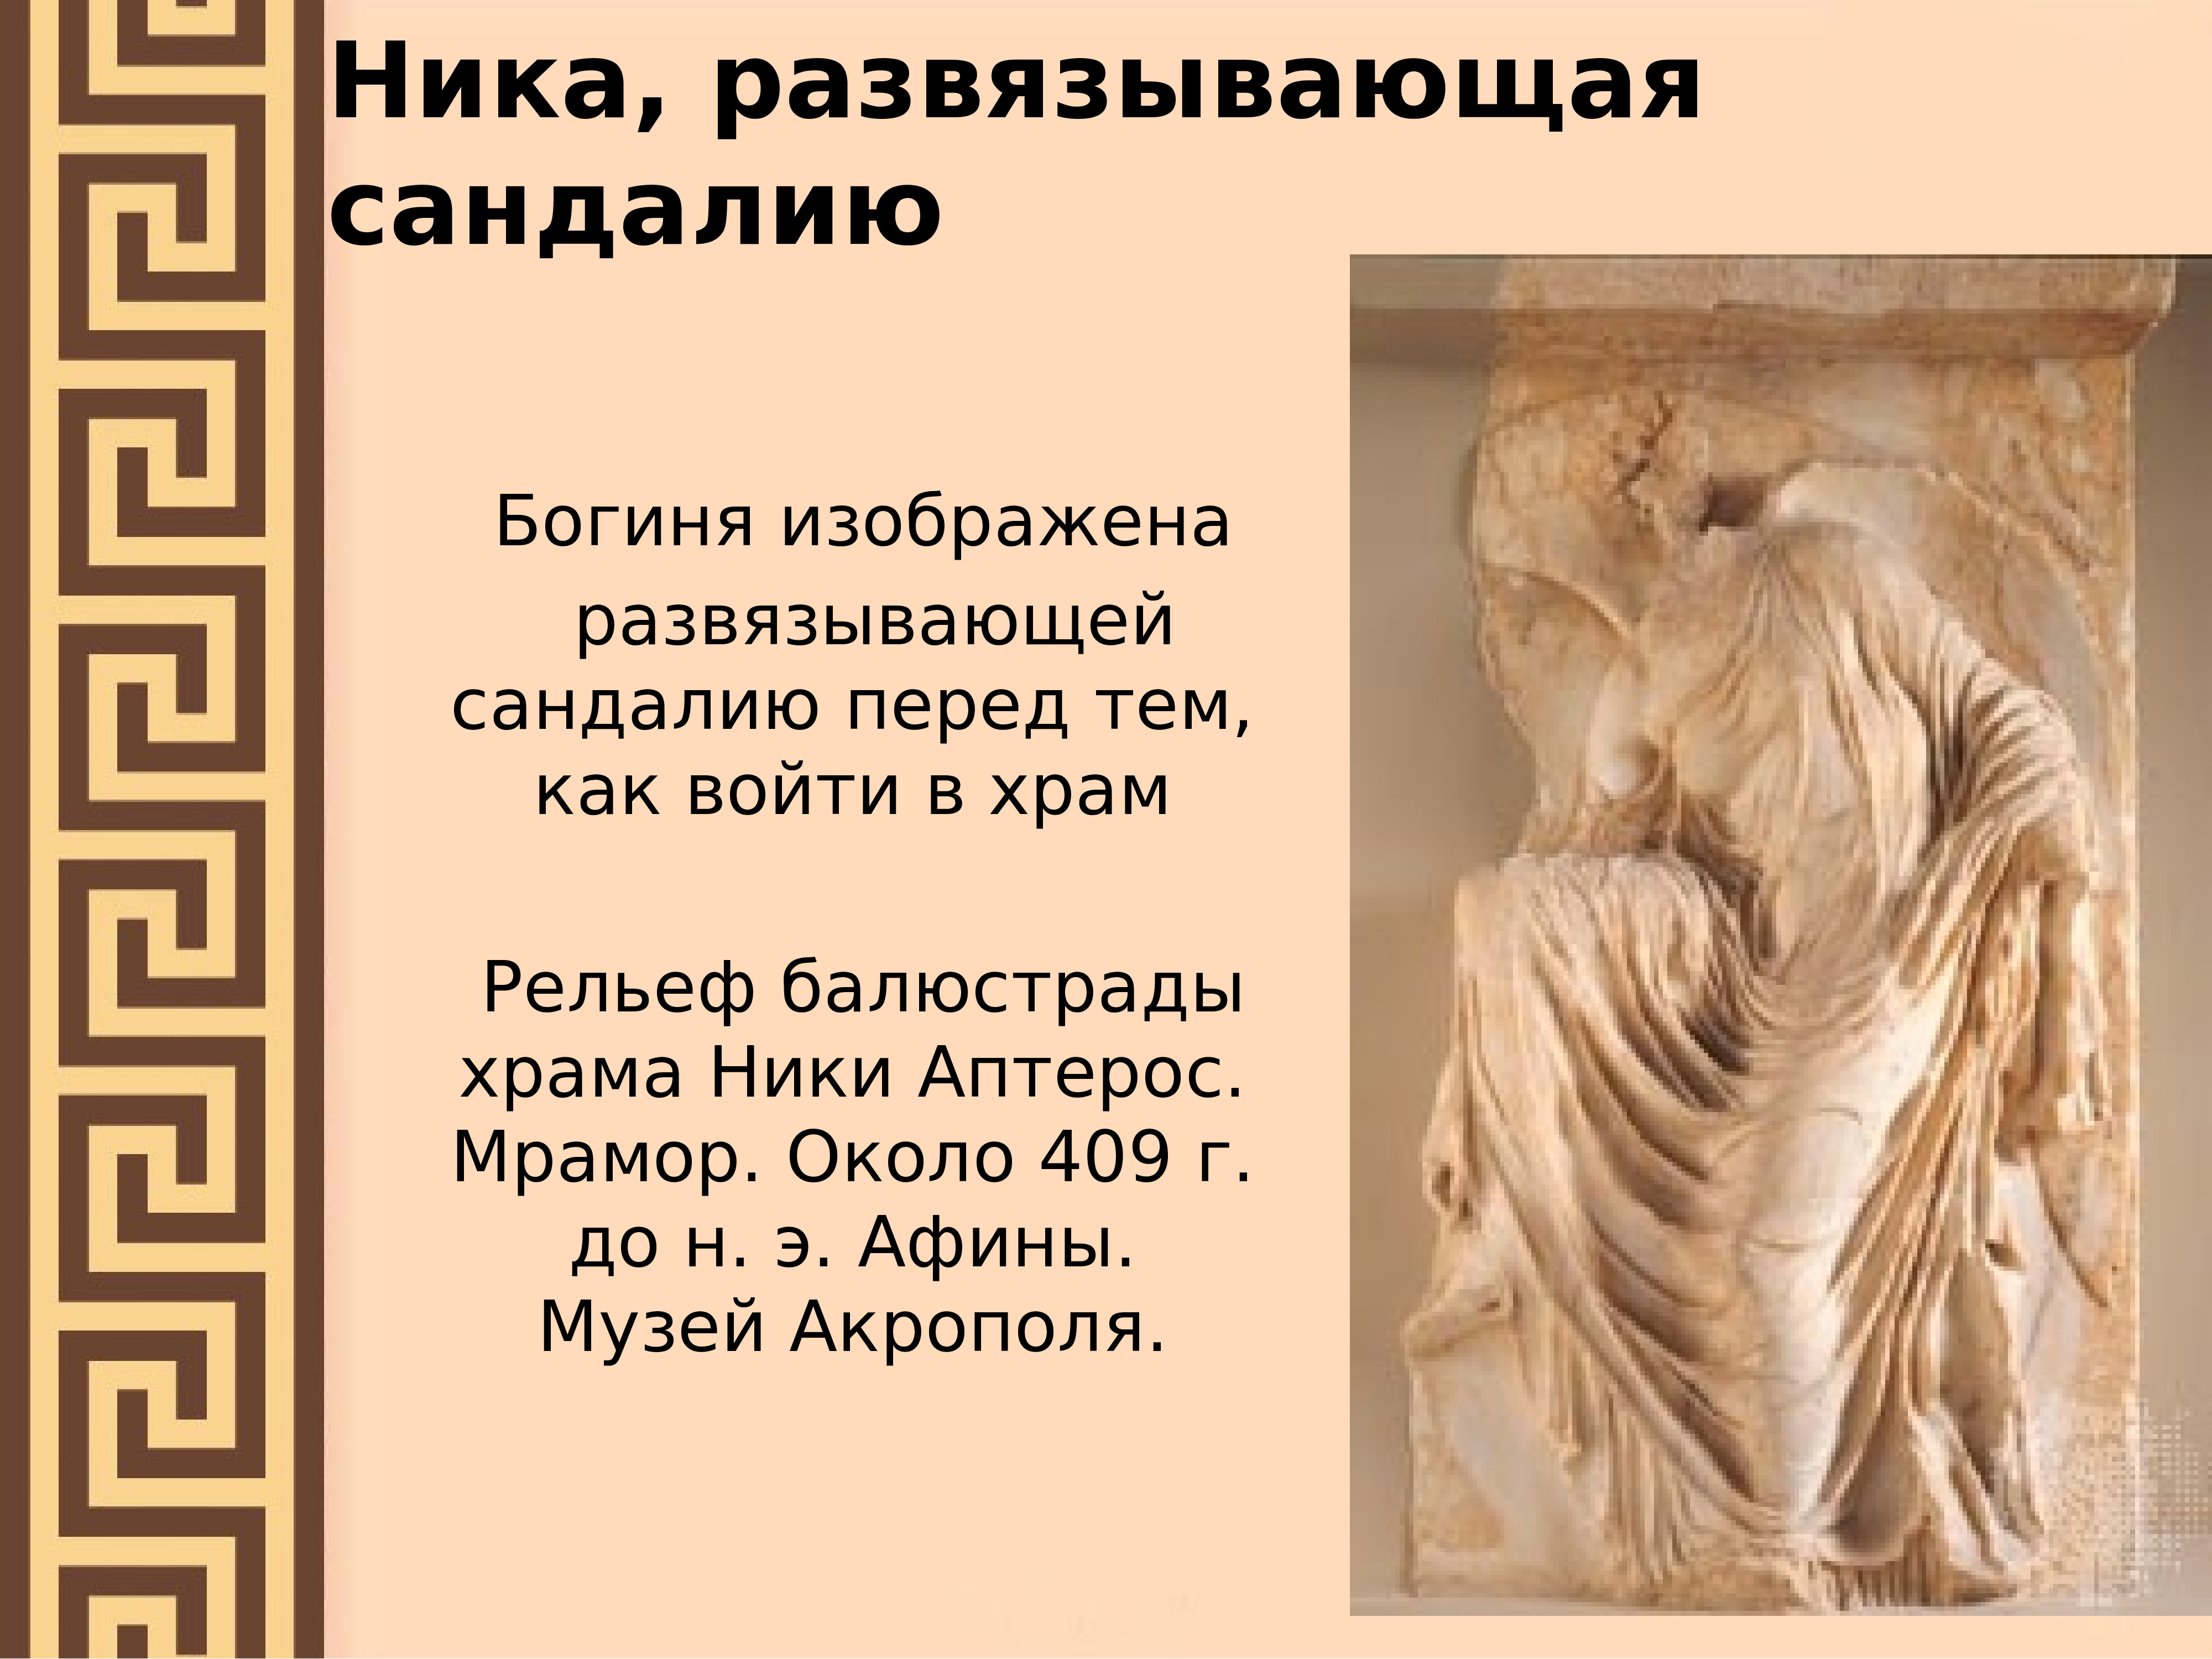 Искусство и досуг древней греции презентация. Рельеф балюстрады Ники Аптерос.